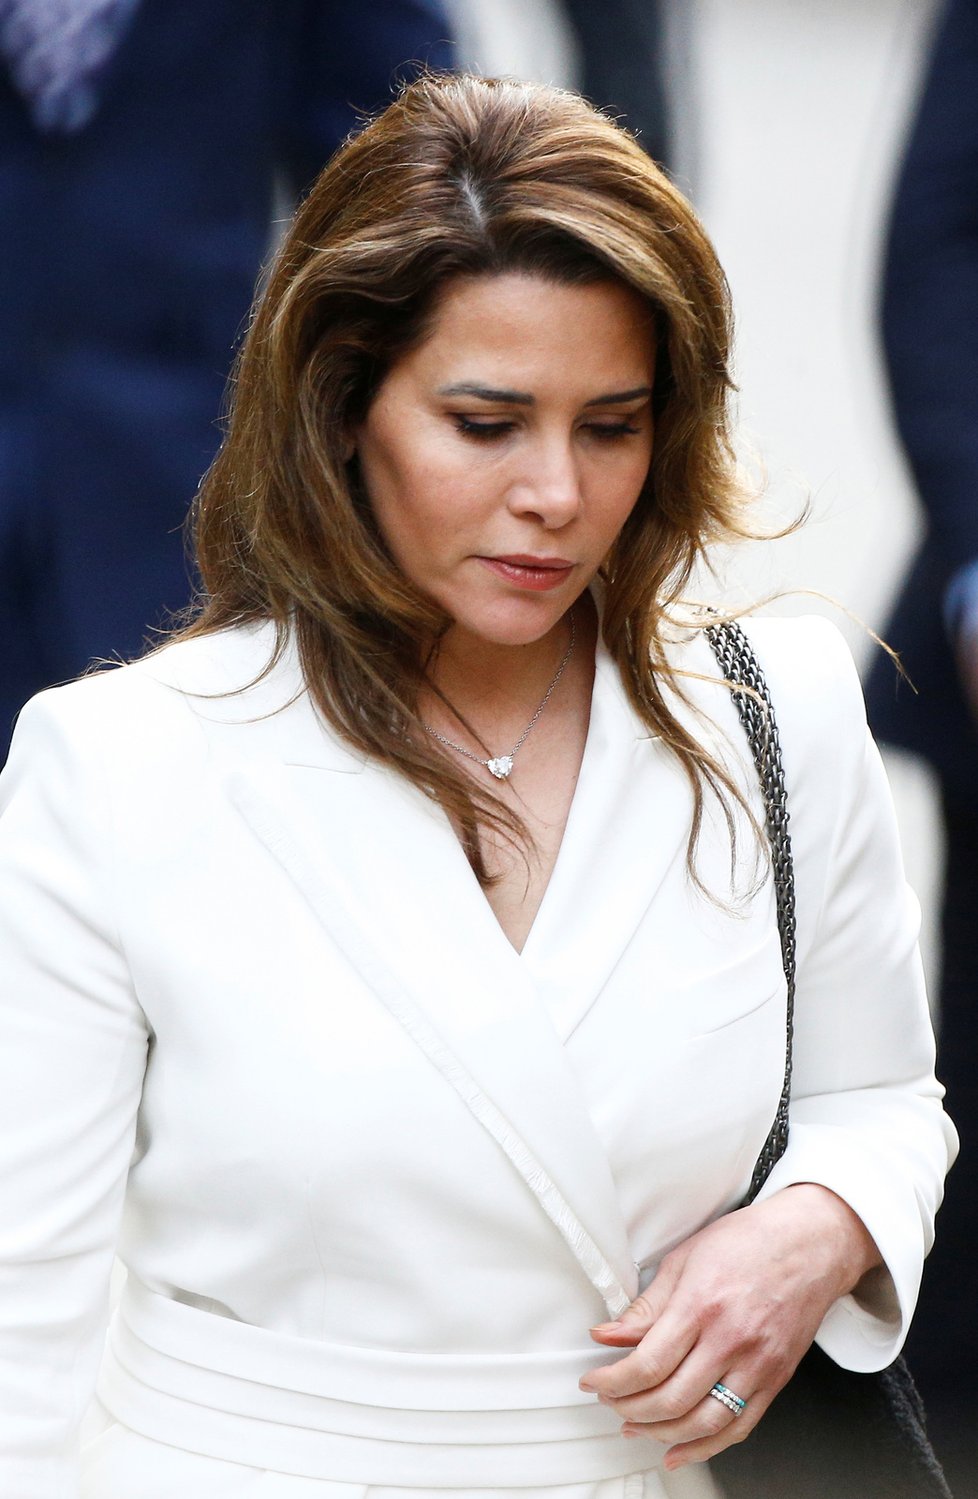 Jordánská princezna Hajá bint al-Husajn u Odvolacího soudu v Londýně (26. 02. 2020)